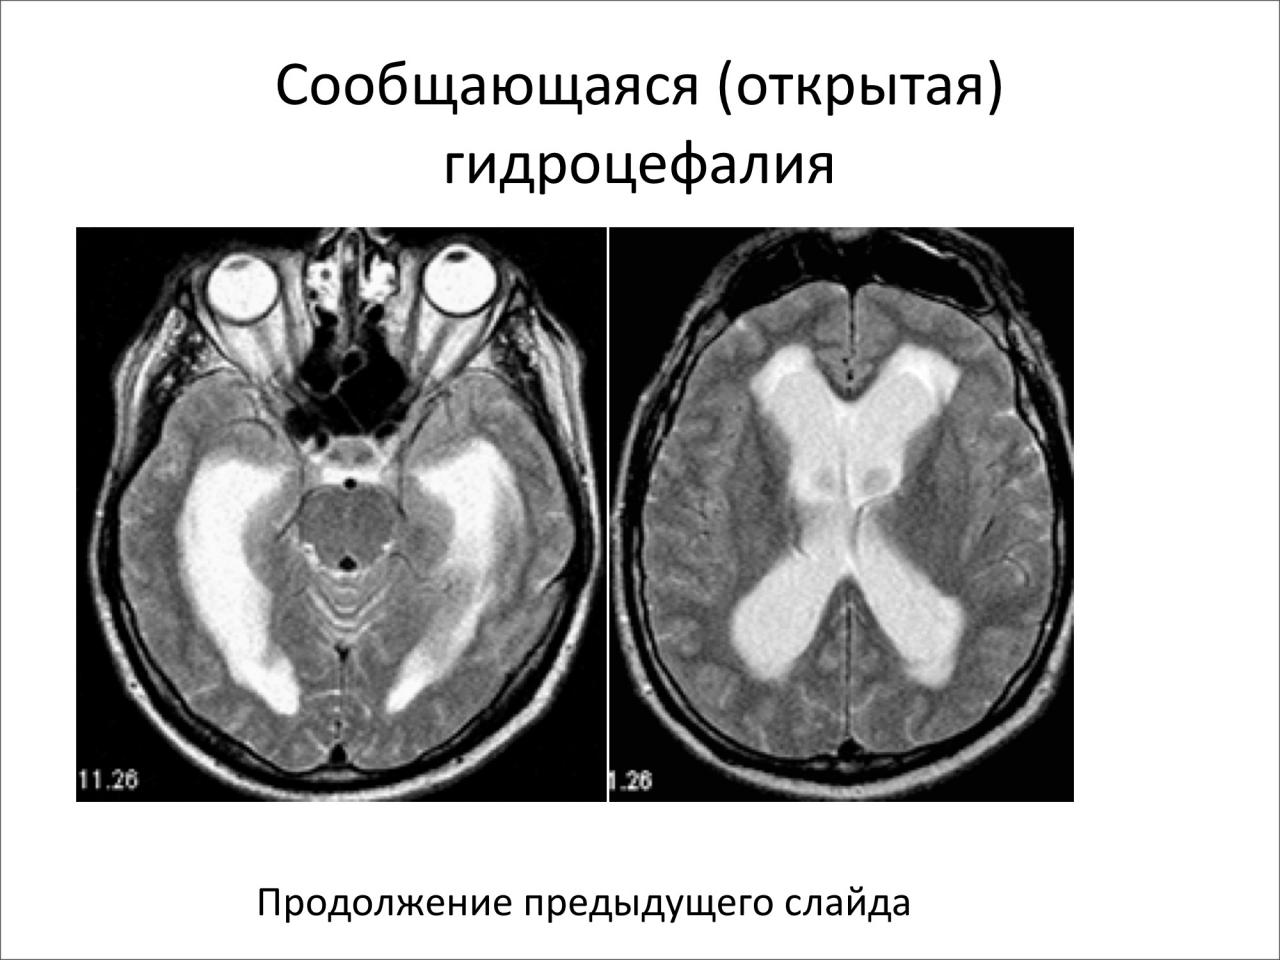 Последствия гидроцефалии головного мозга. Окклюзионная гидроцефалия мрт. Заместительная наружная гидроцефалия кт. Внутренняя открытая гидроцефалия мрт. Арезорбтивная гидроцефалия головного мозга.